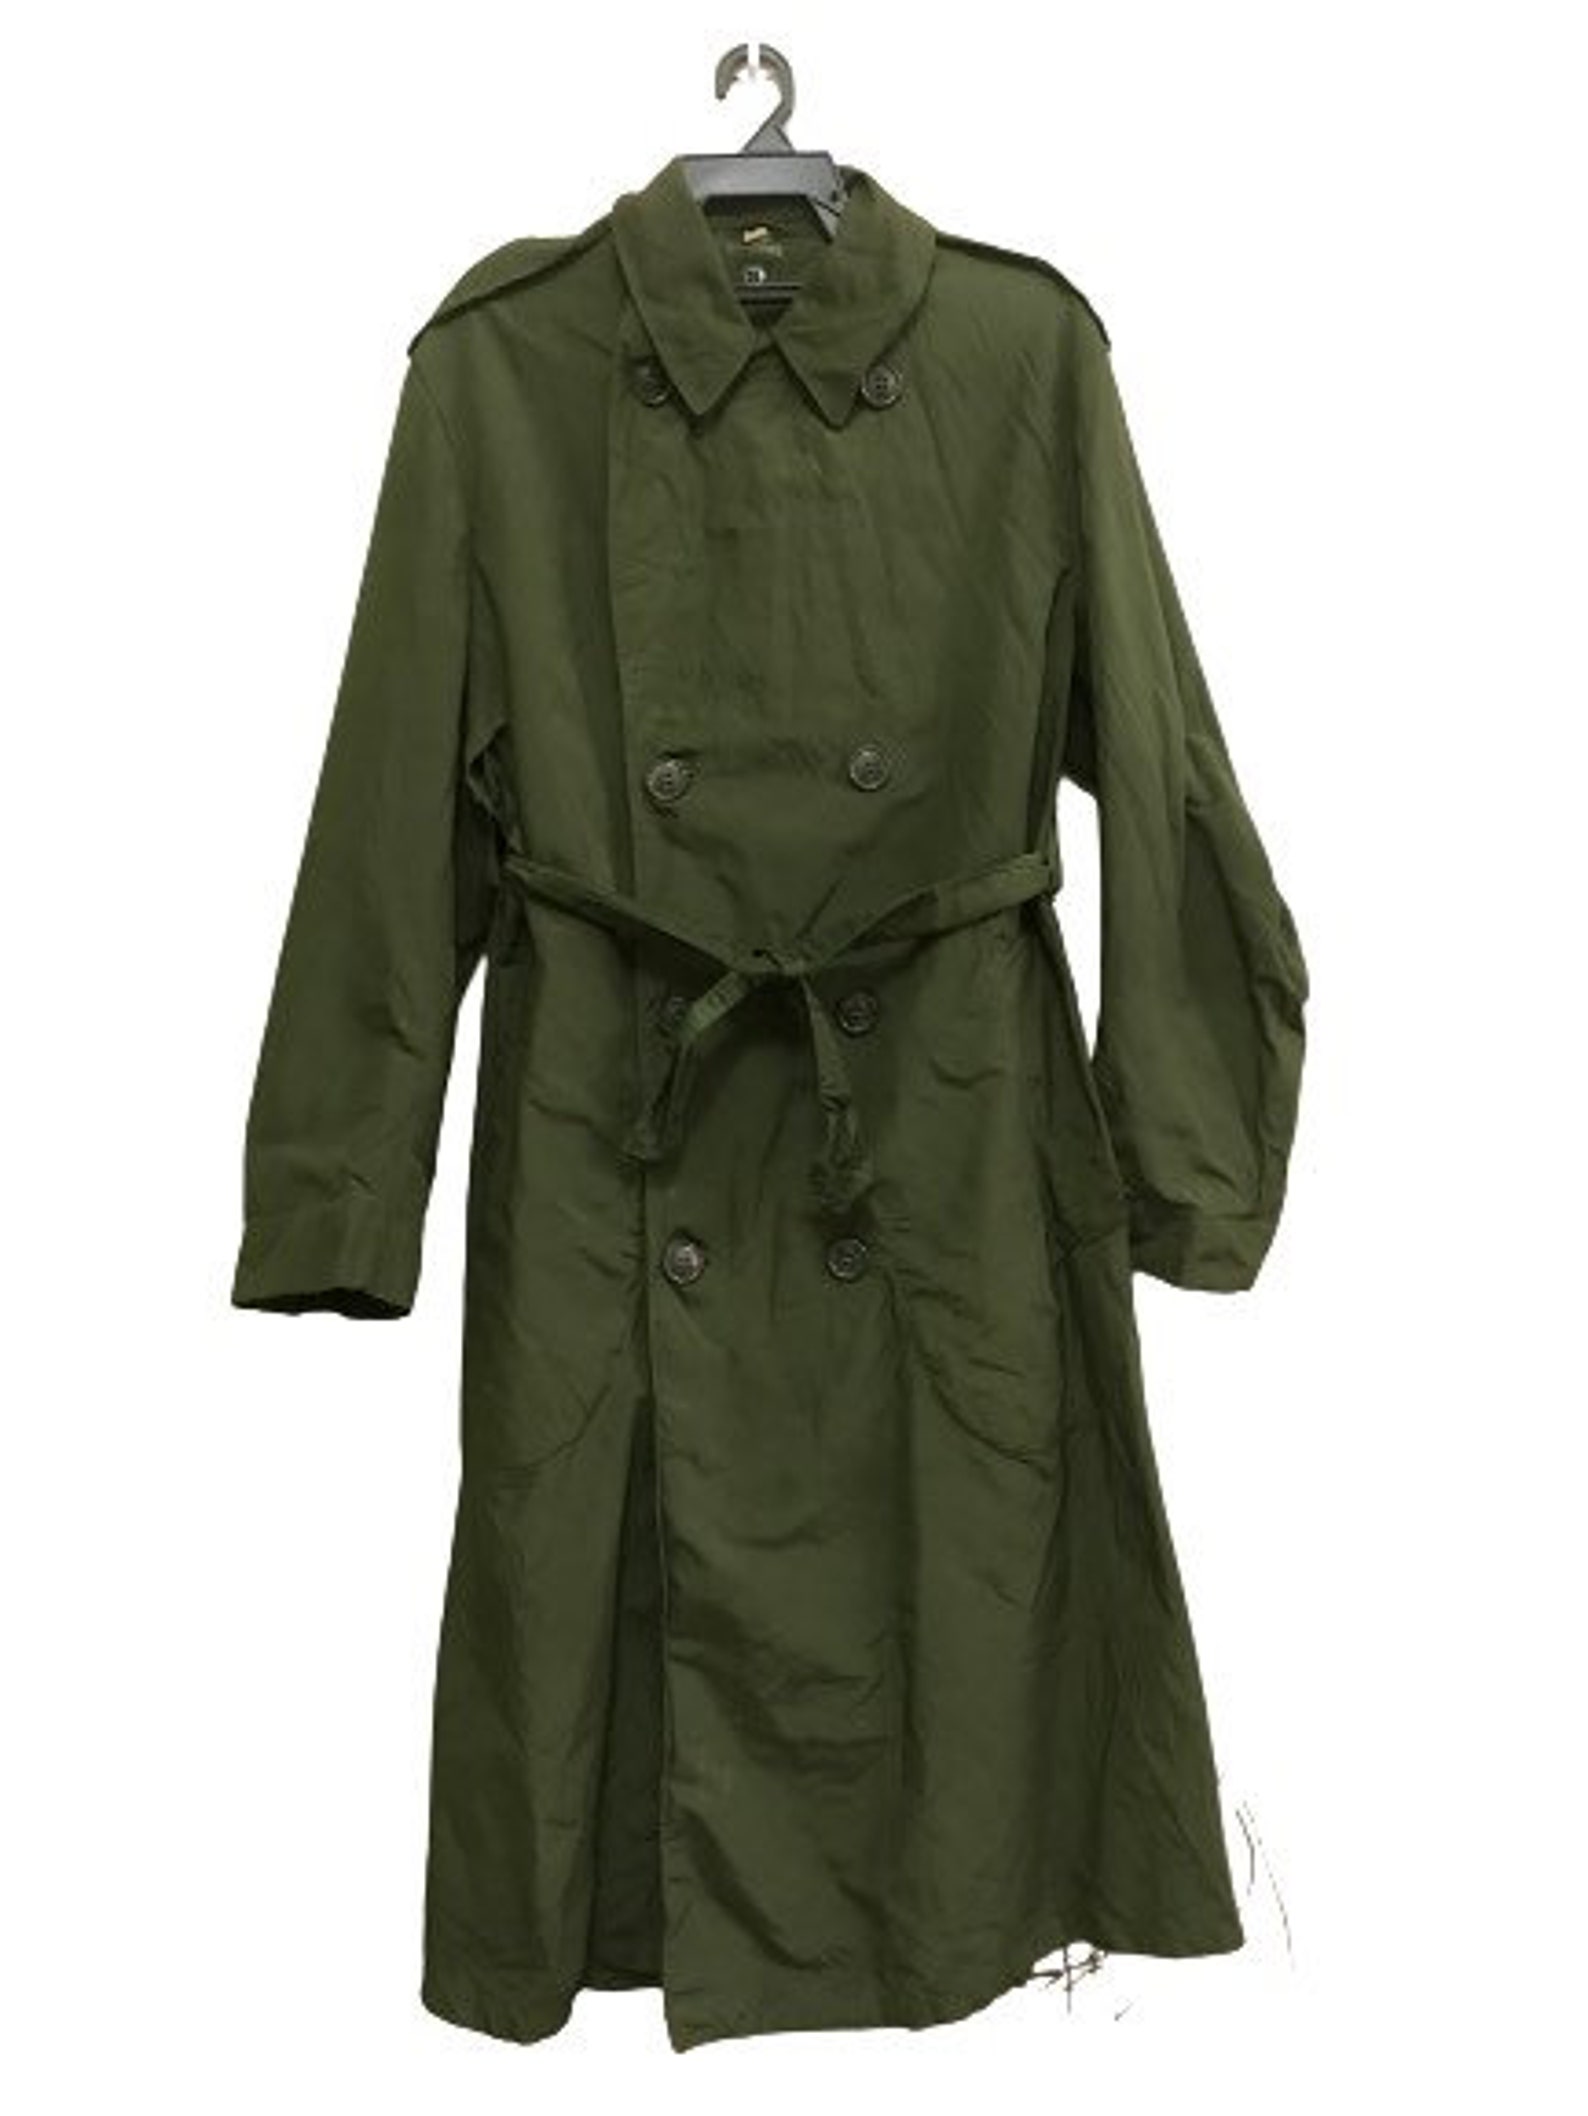 MEGA SALE Vintage 50s Raincoat M-1950 Usmc Us Army Military | Etsy